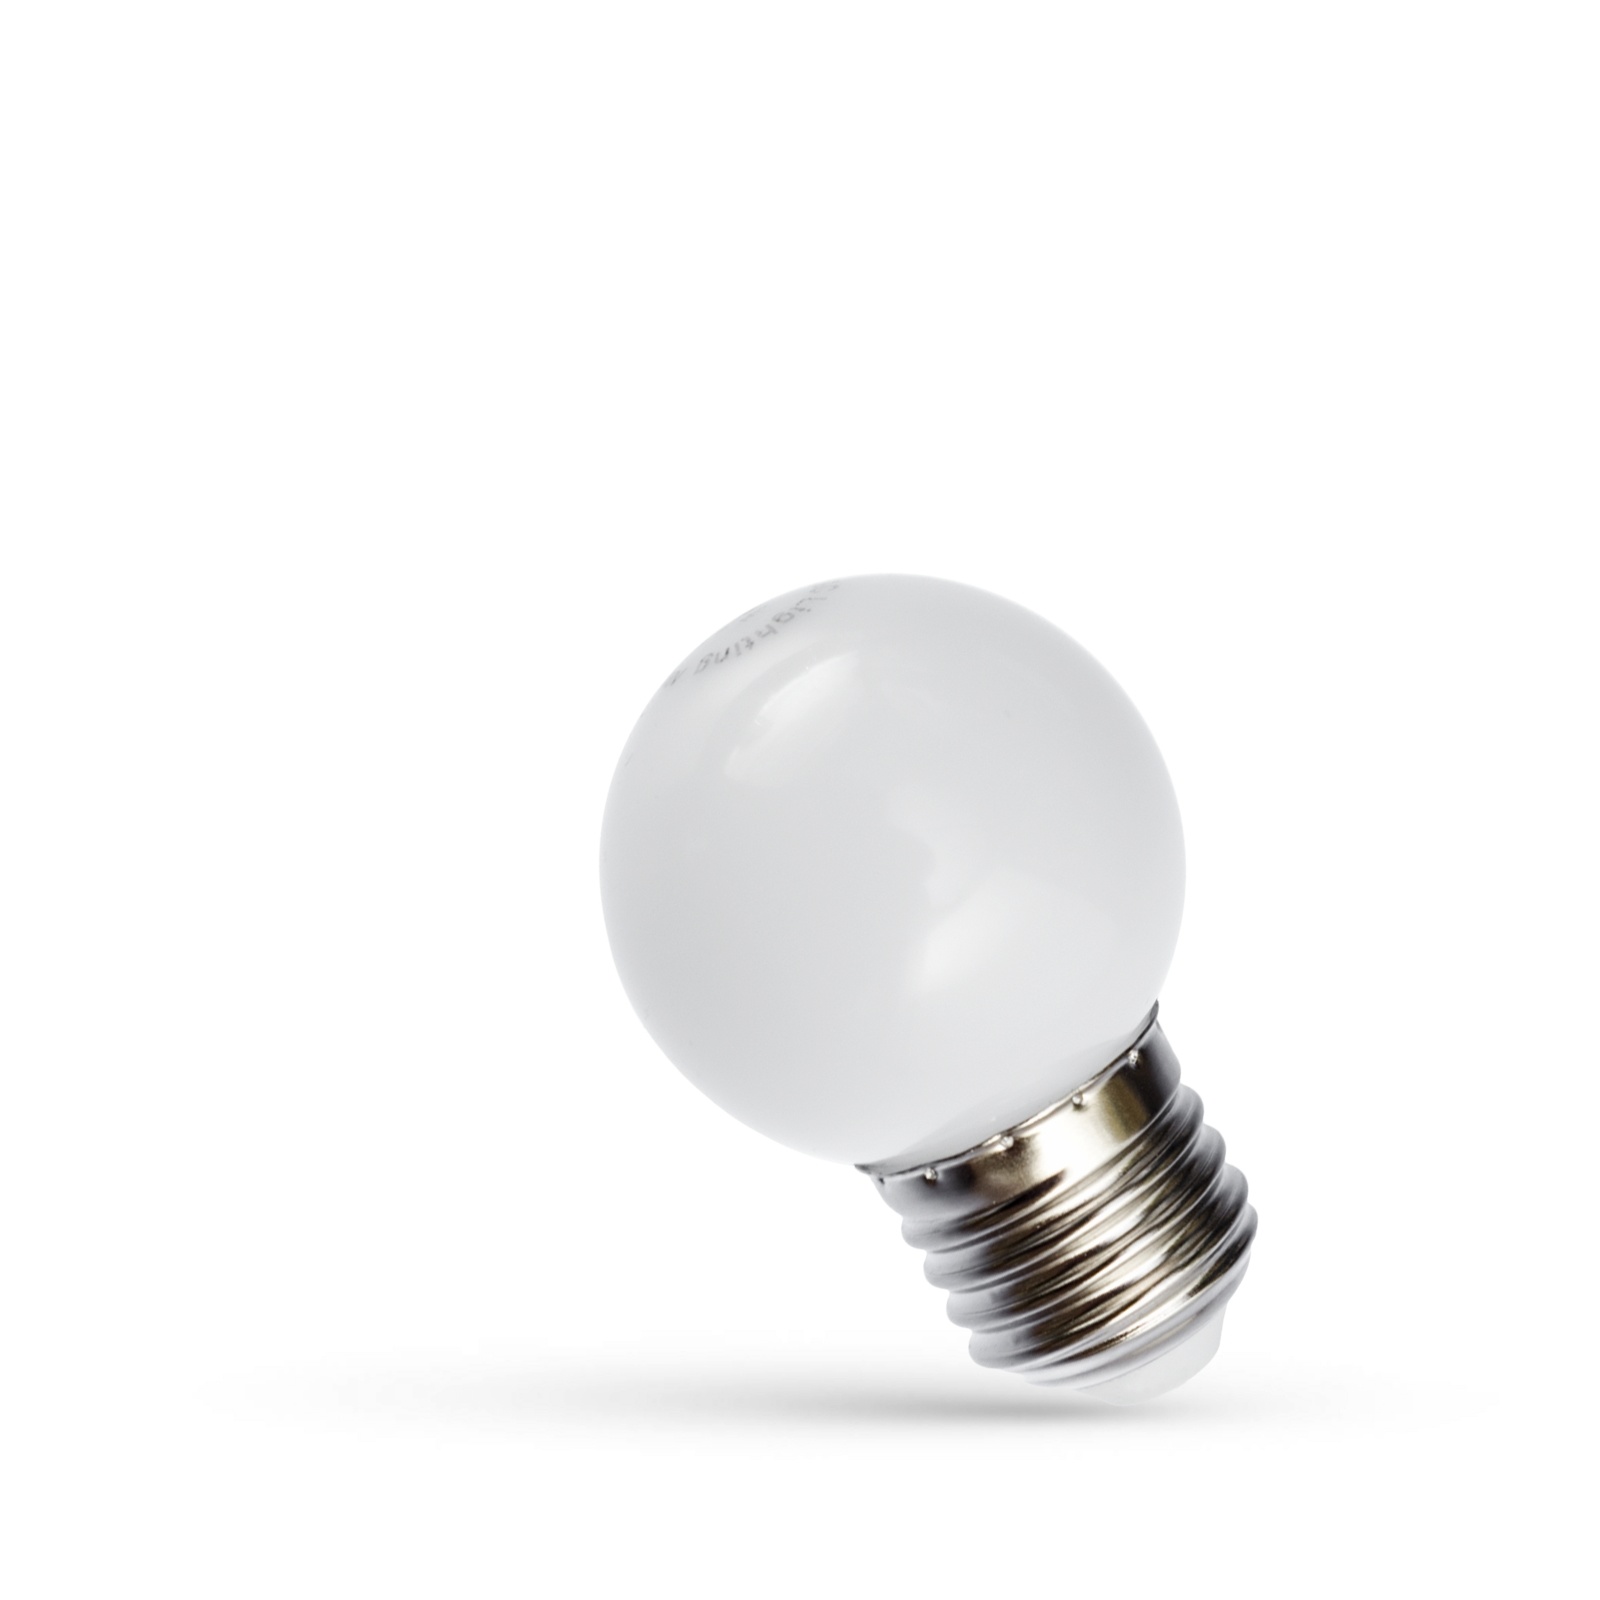 Voorwoord Met pensioen gaan eerlijk LED Lamp E27 fitting - G45 - 6000K daglicht wit - 1W vervangt 10W -  Ledpanelendiscounter.nl